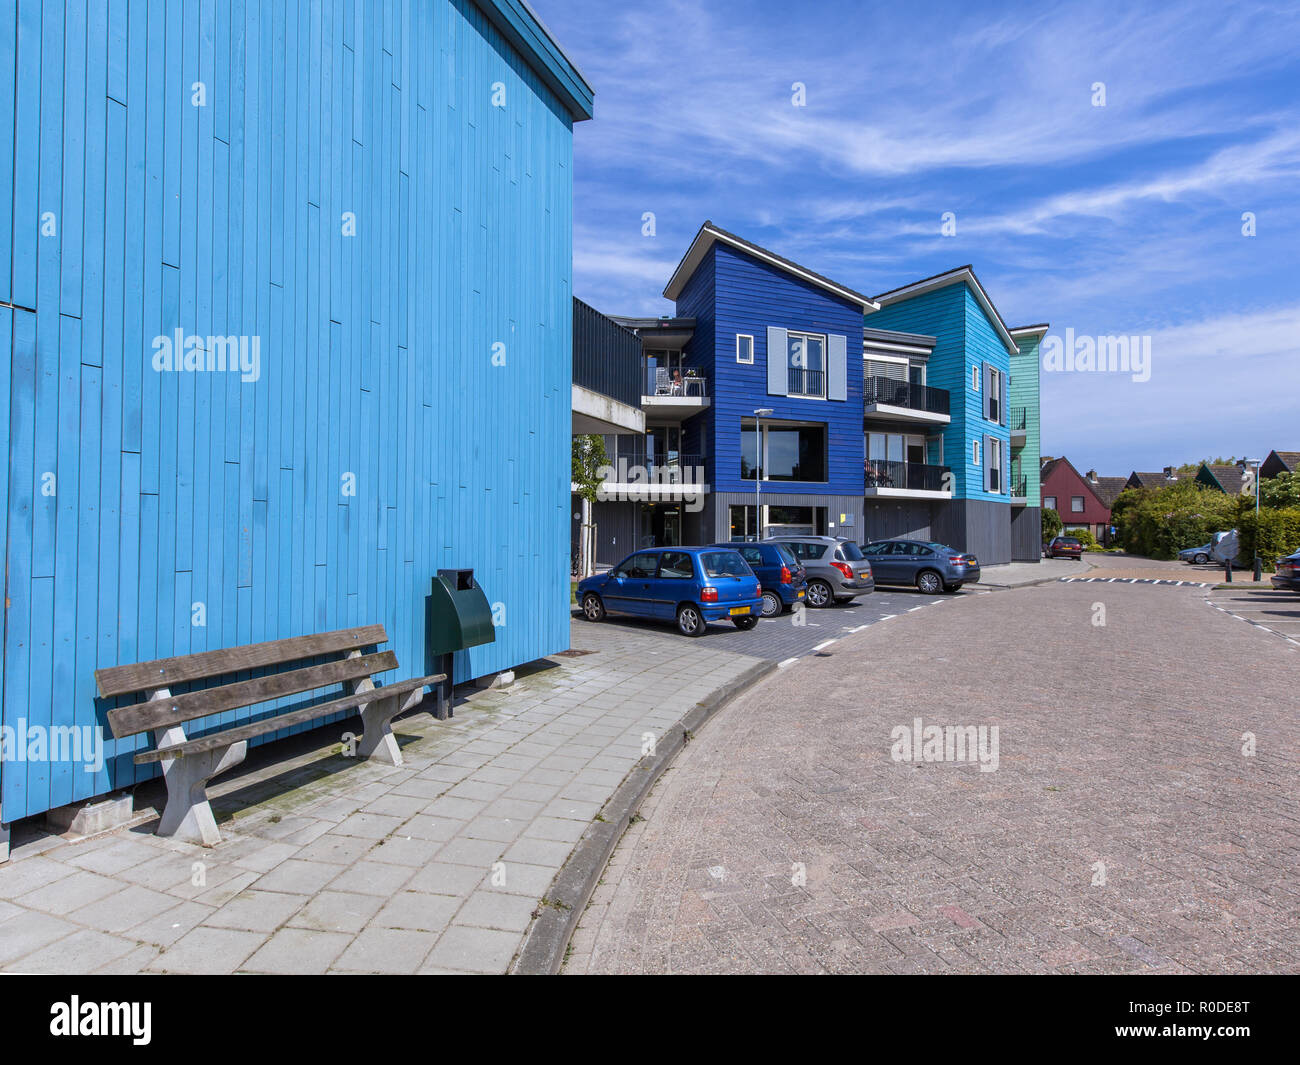 Panca di legno in una strada con case moderne. Architettura contemporanea può essere trovato in molti luoghi nei Paesi Bassi come qui vicino ad Amsterdam Foto Stock